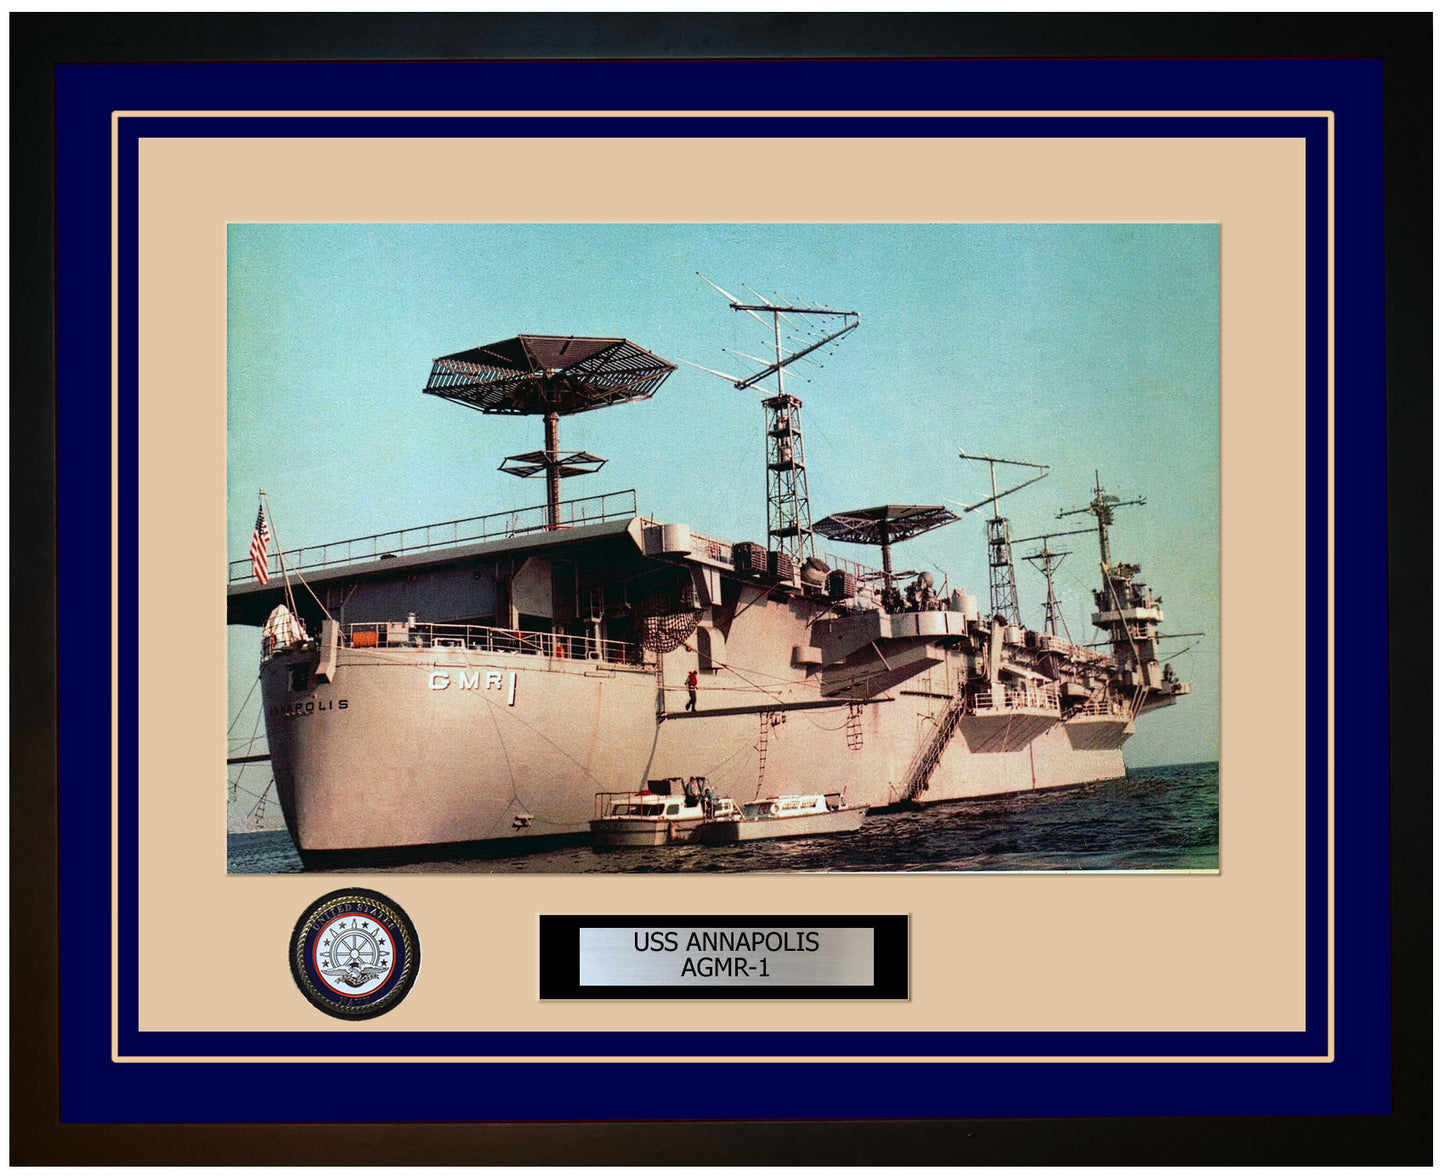 USS ANNAPOLIS AGMR-1 Framed Navy Ship Photo Blue